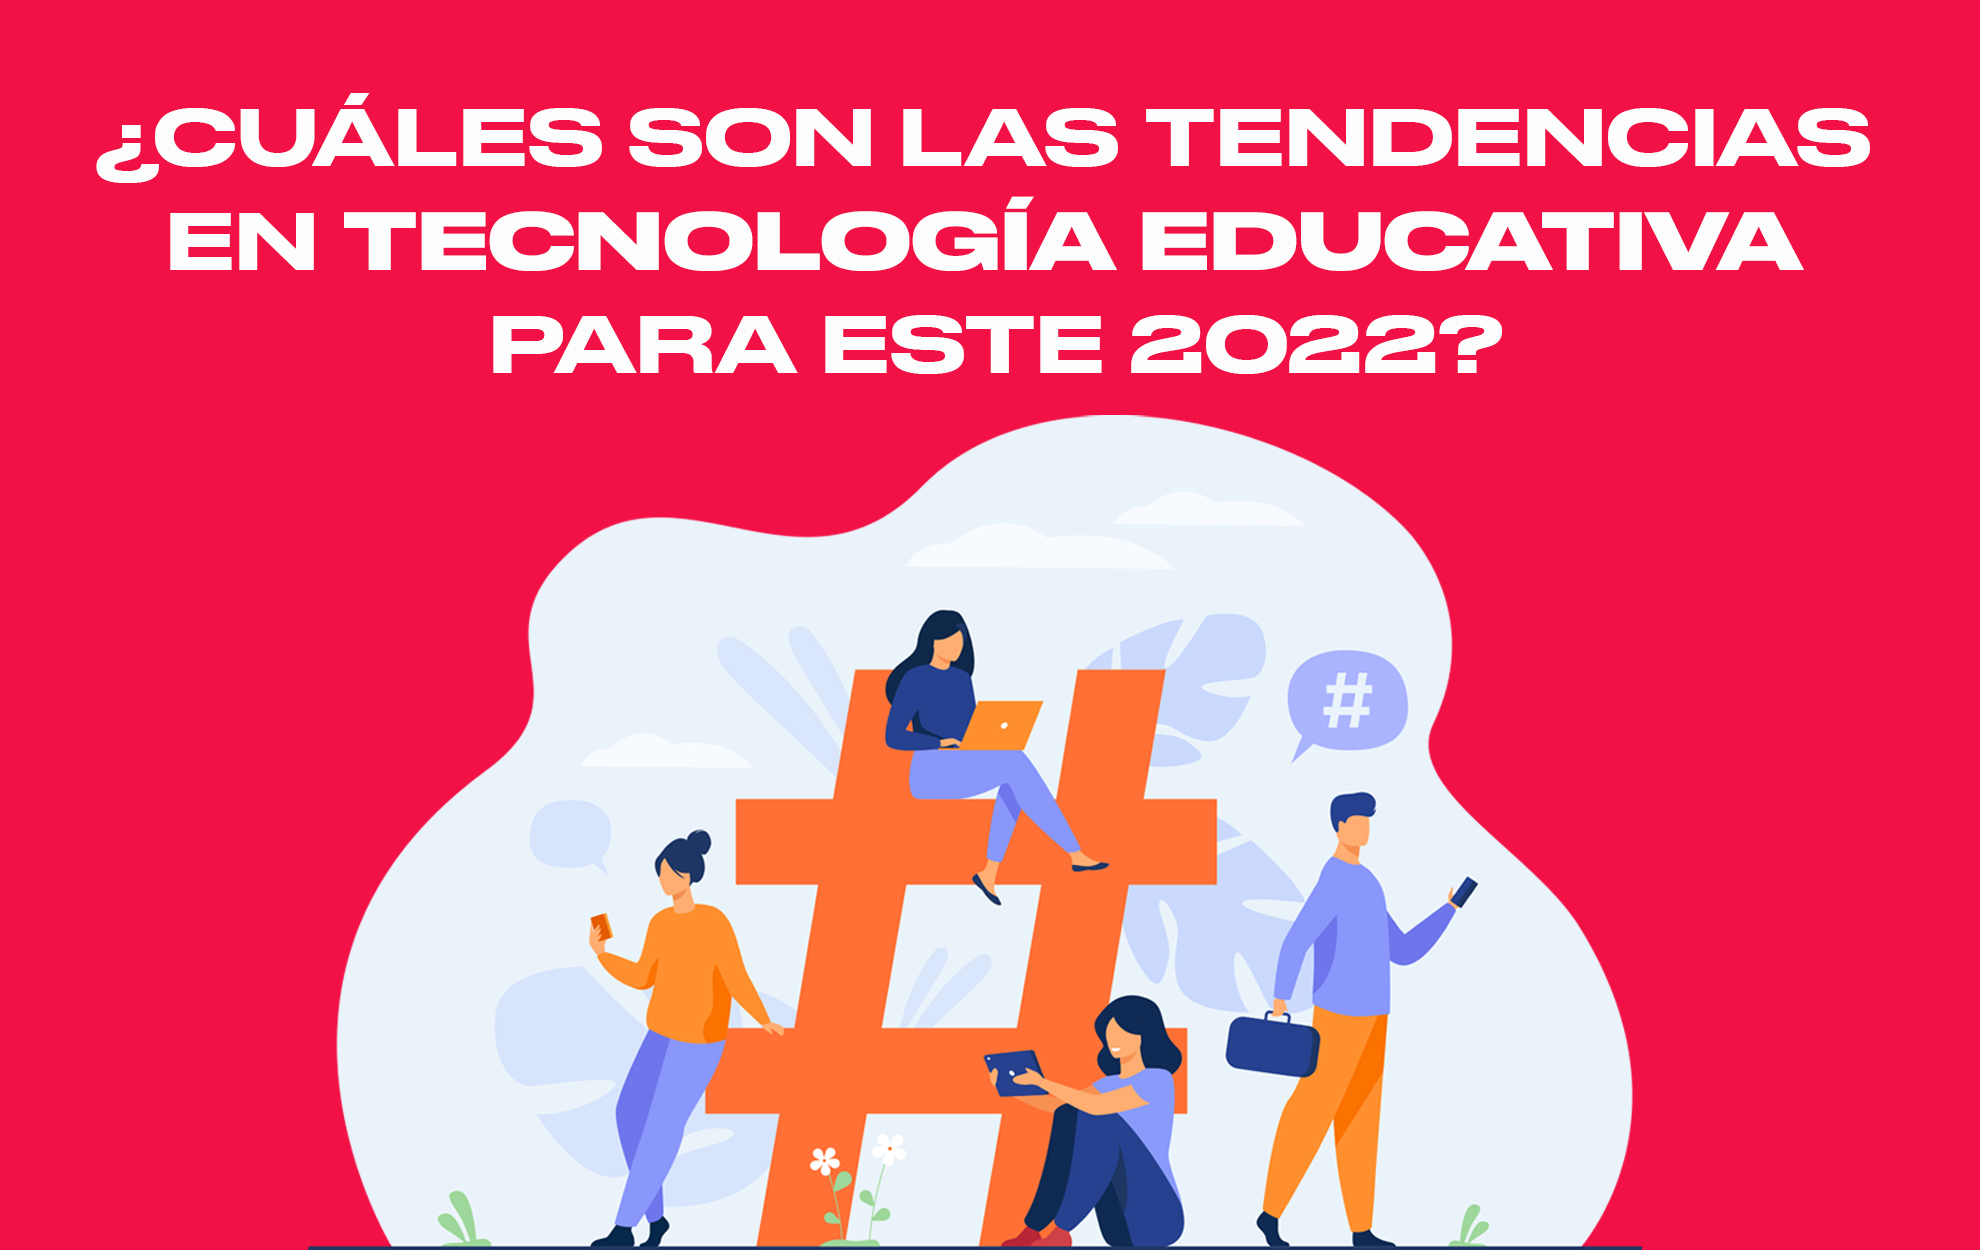 cCUALES SON LAS TENDENCIAS
EN TECNOLOGIA EDUCATIVA

PARA ESTE 20227